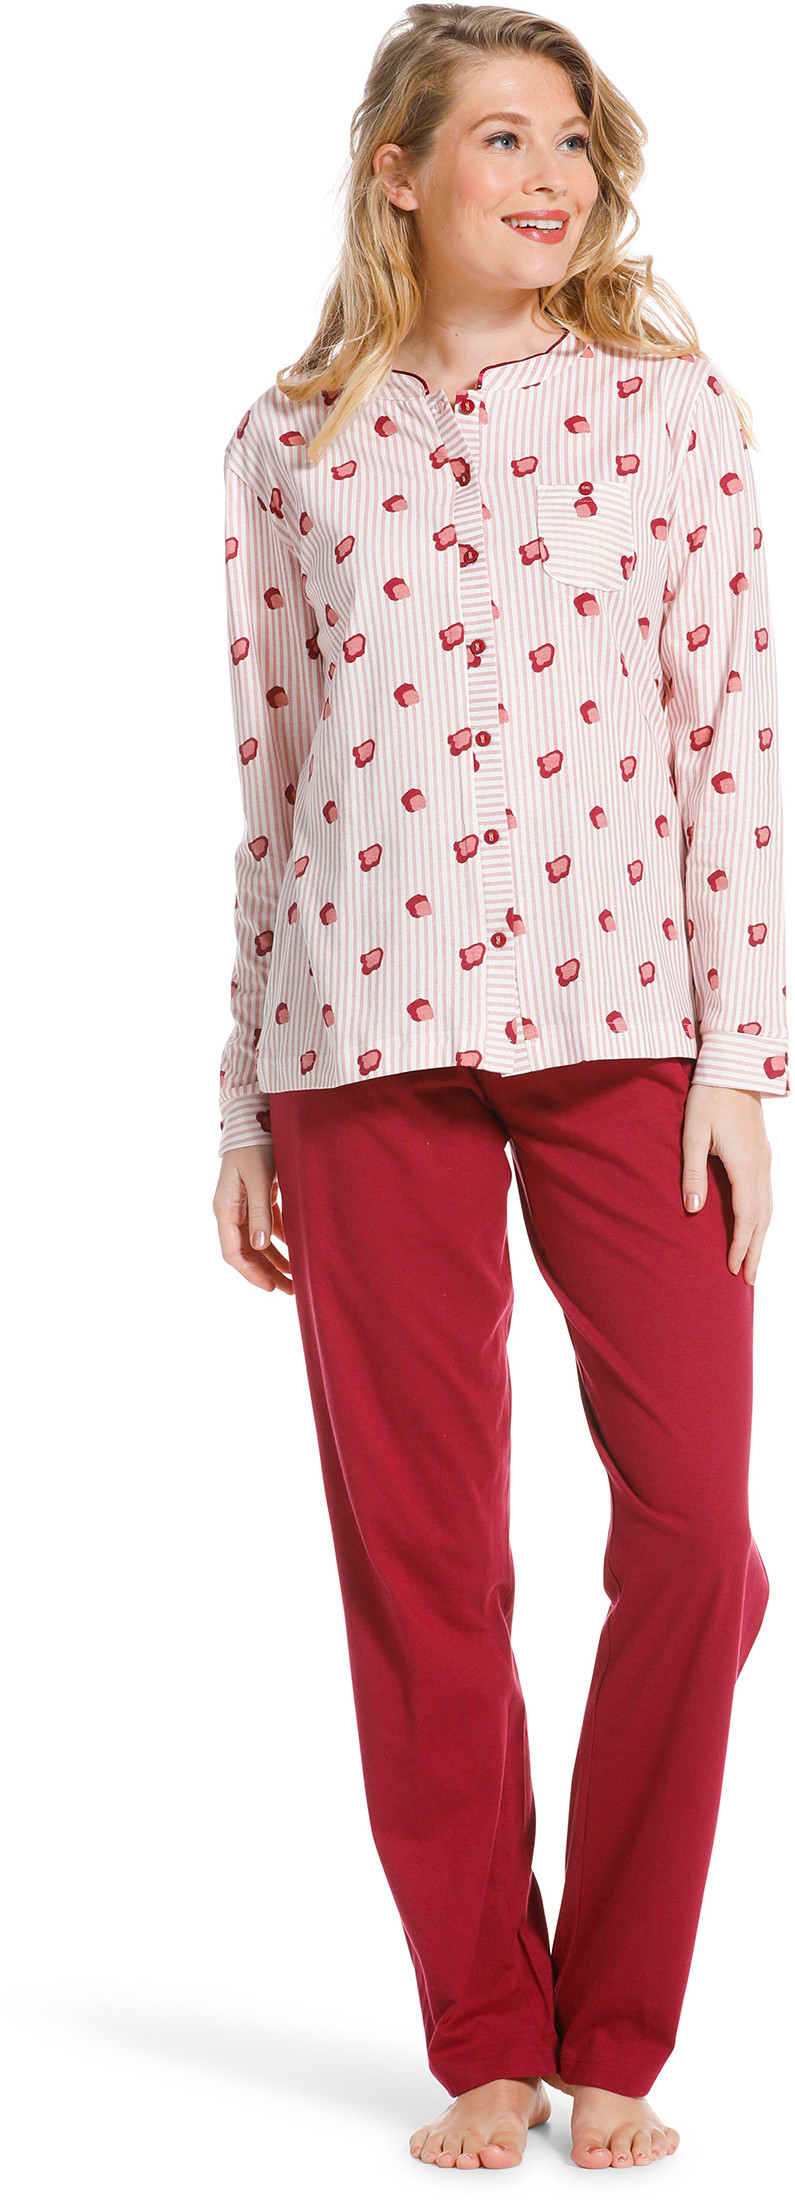 Pastunette doorknoop dames pyjama 20222-104-6-46